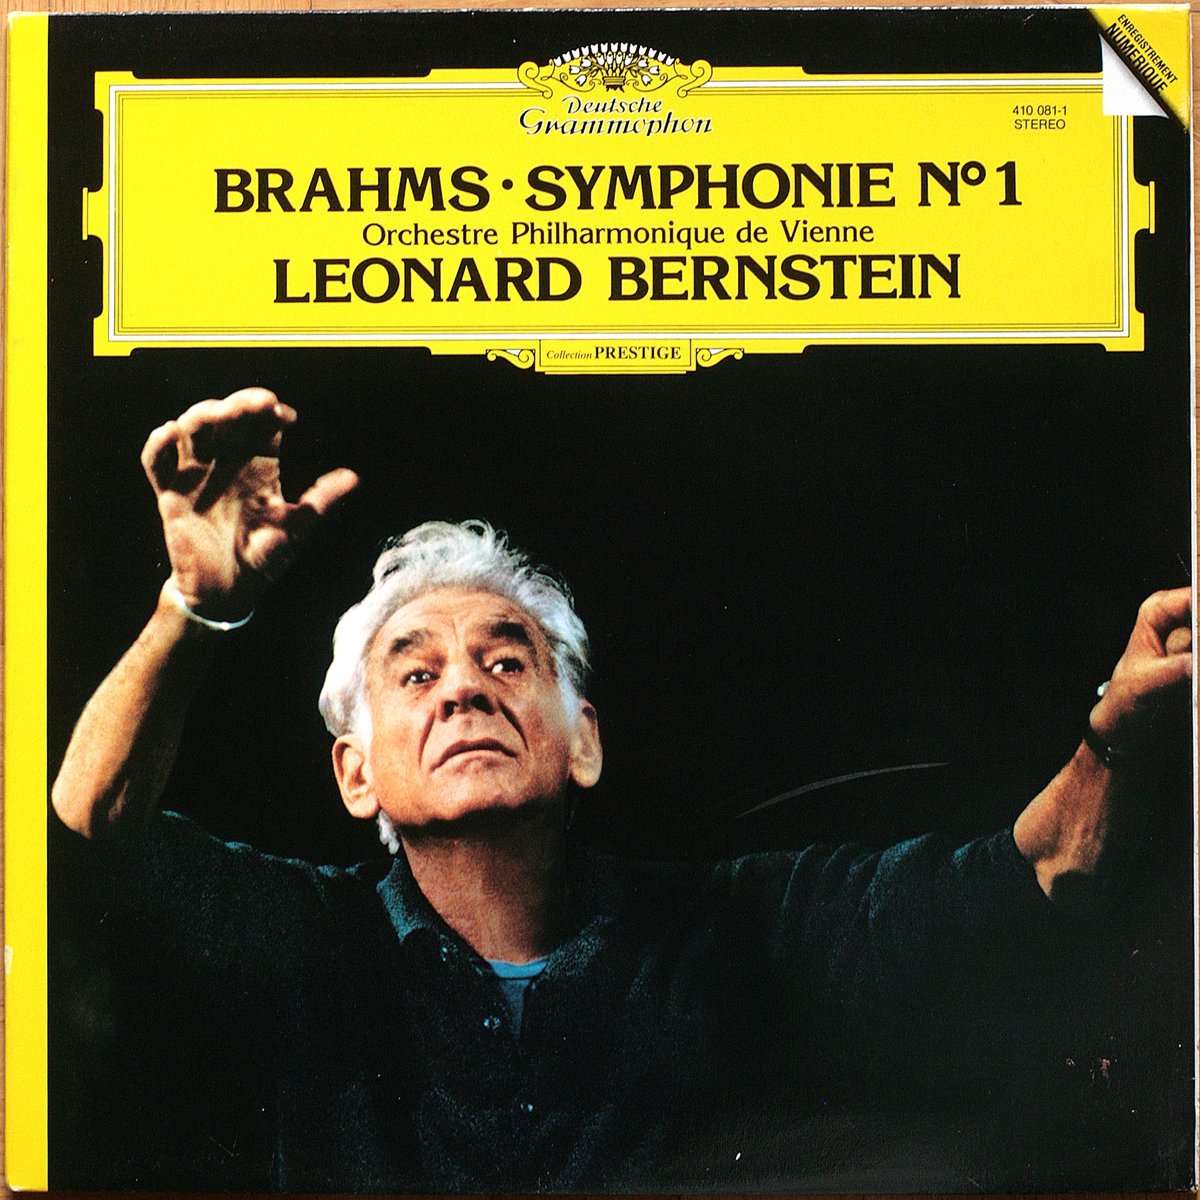 DGG 410 081 Brahms Symphonie 1 Bernstein DGG Digital Aufnahme